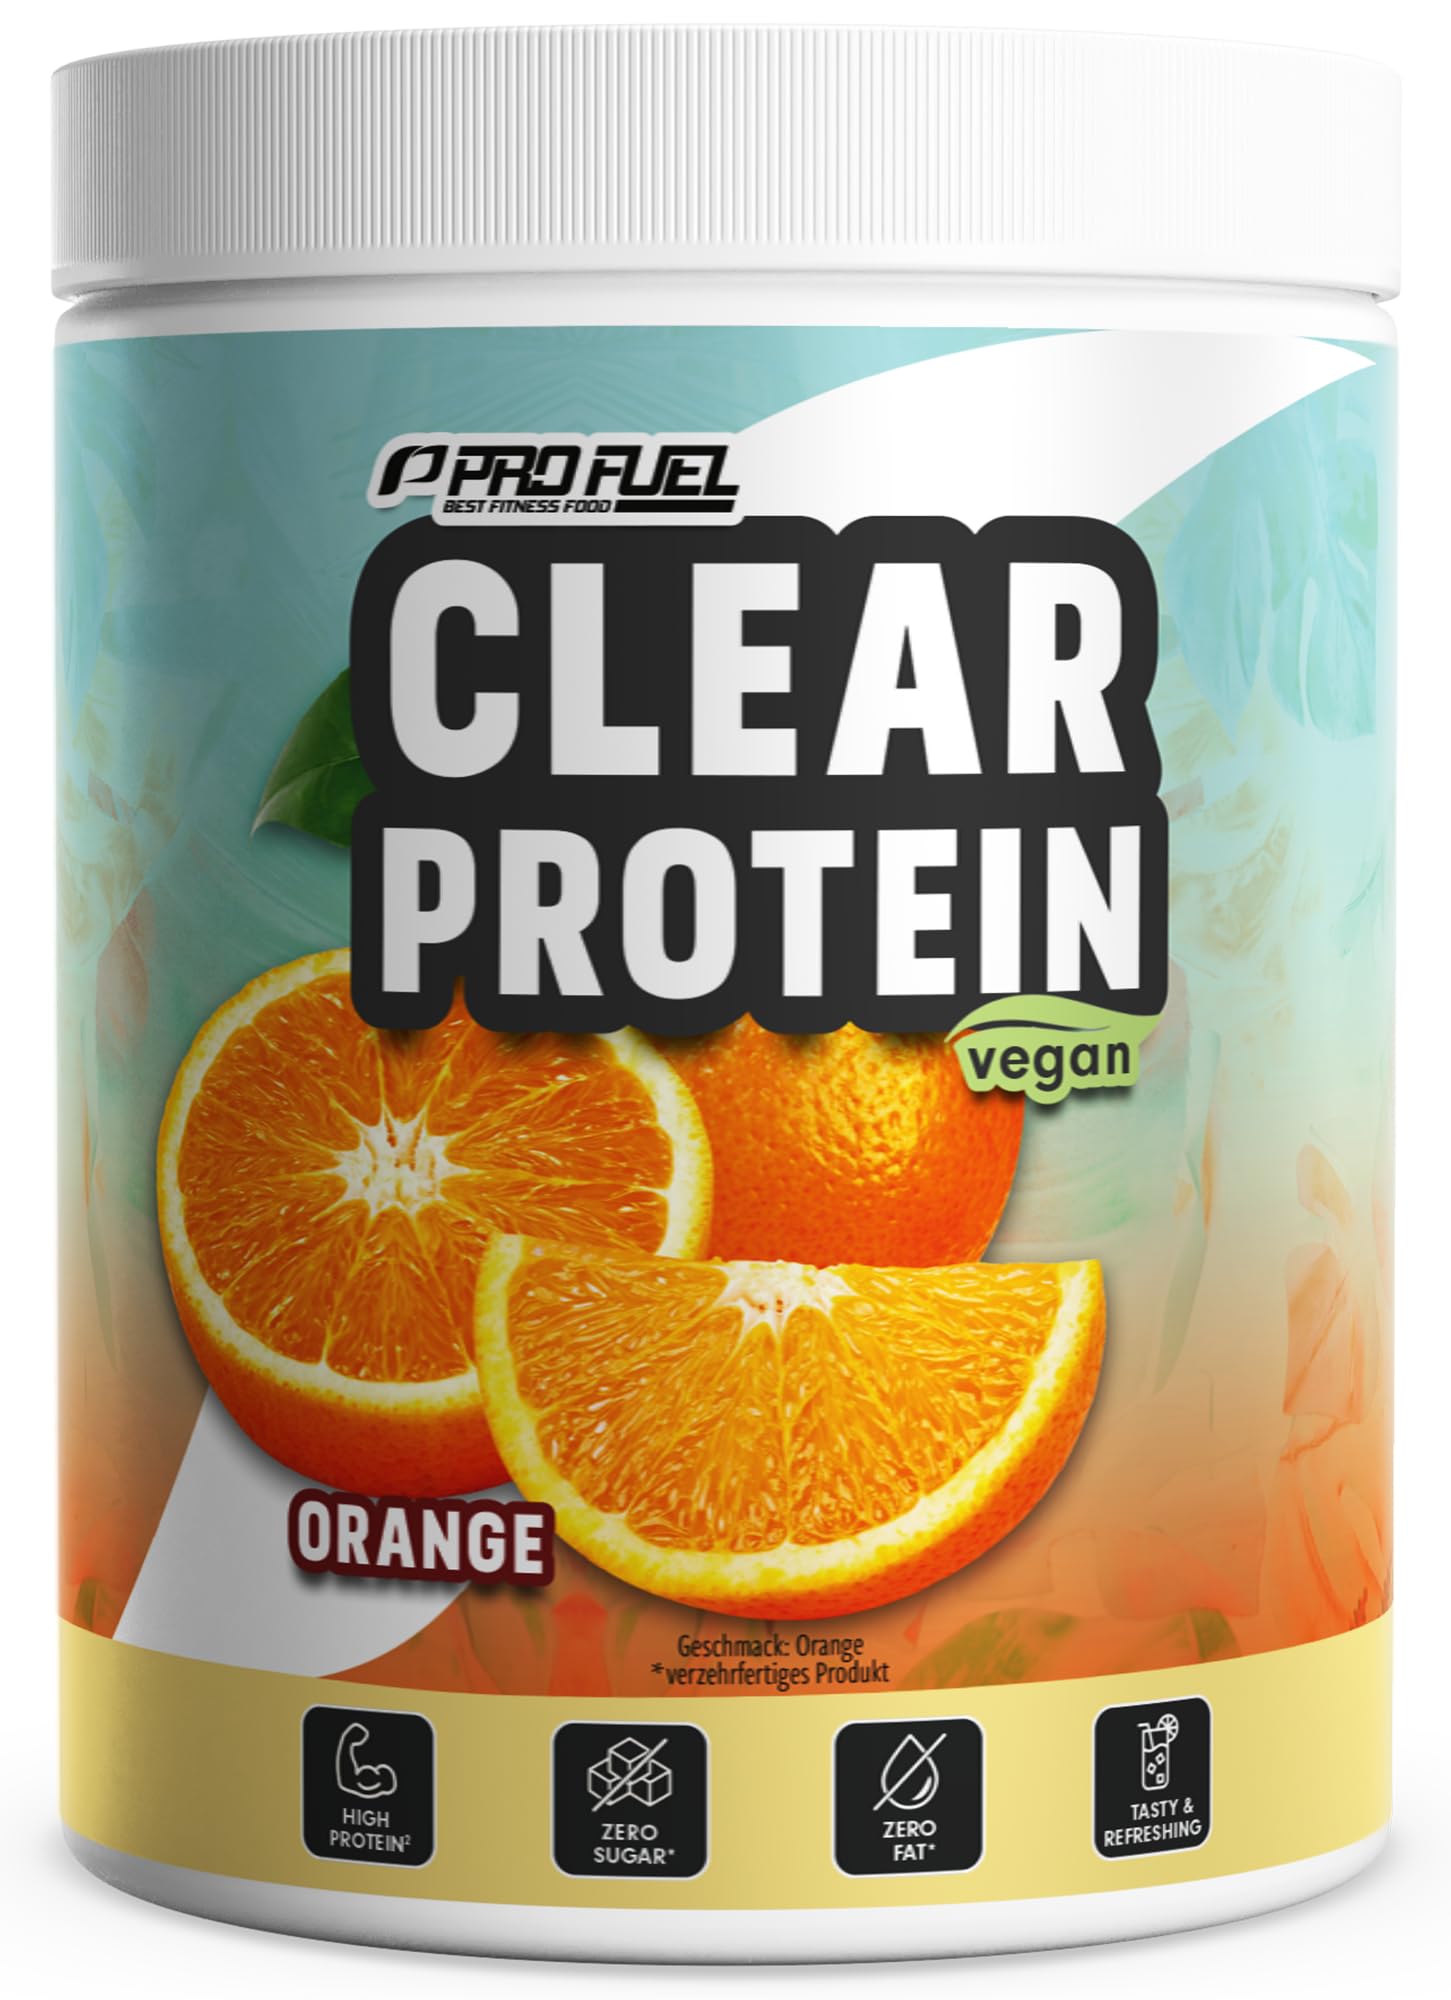 Clear Protein Vegan 360g ORANGE - unglaublich leckerer & erfrischender Protein-Drink - vegane Clear Whey Protein/Iso Clear Alternative mit hochwertigem Erbsenproteinhydrolysat - 56% Protein